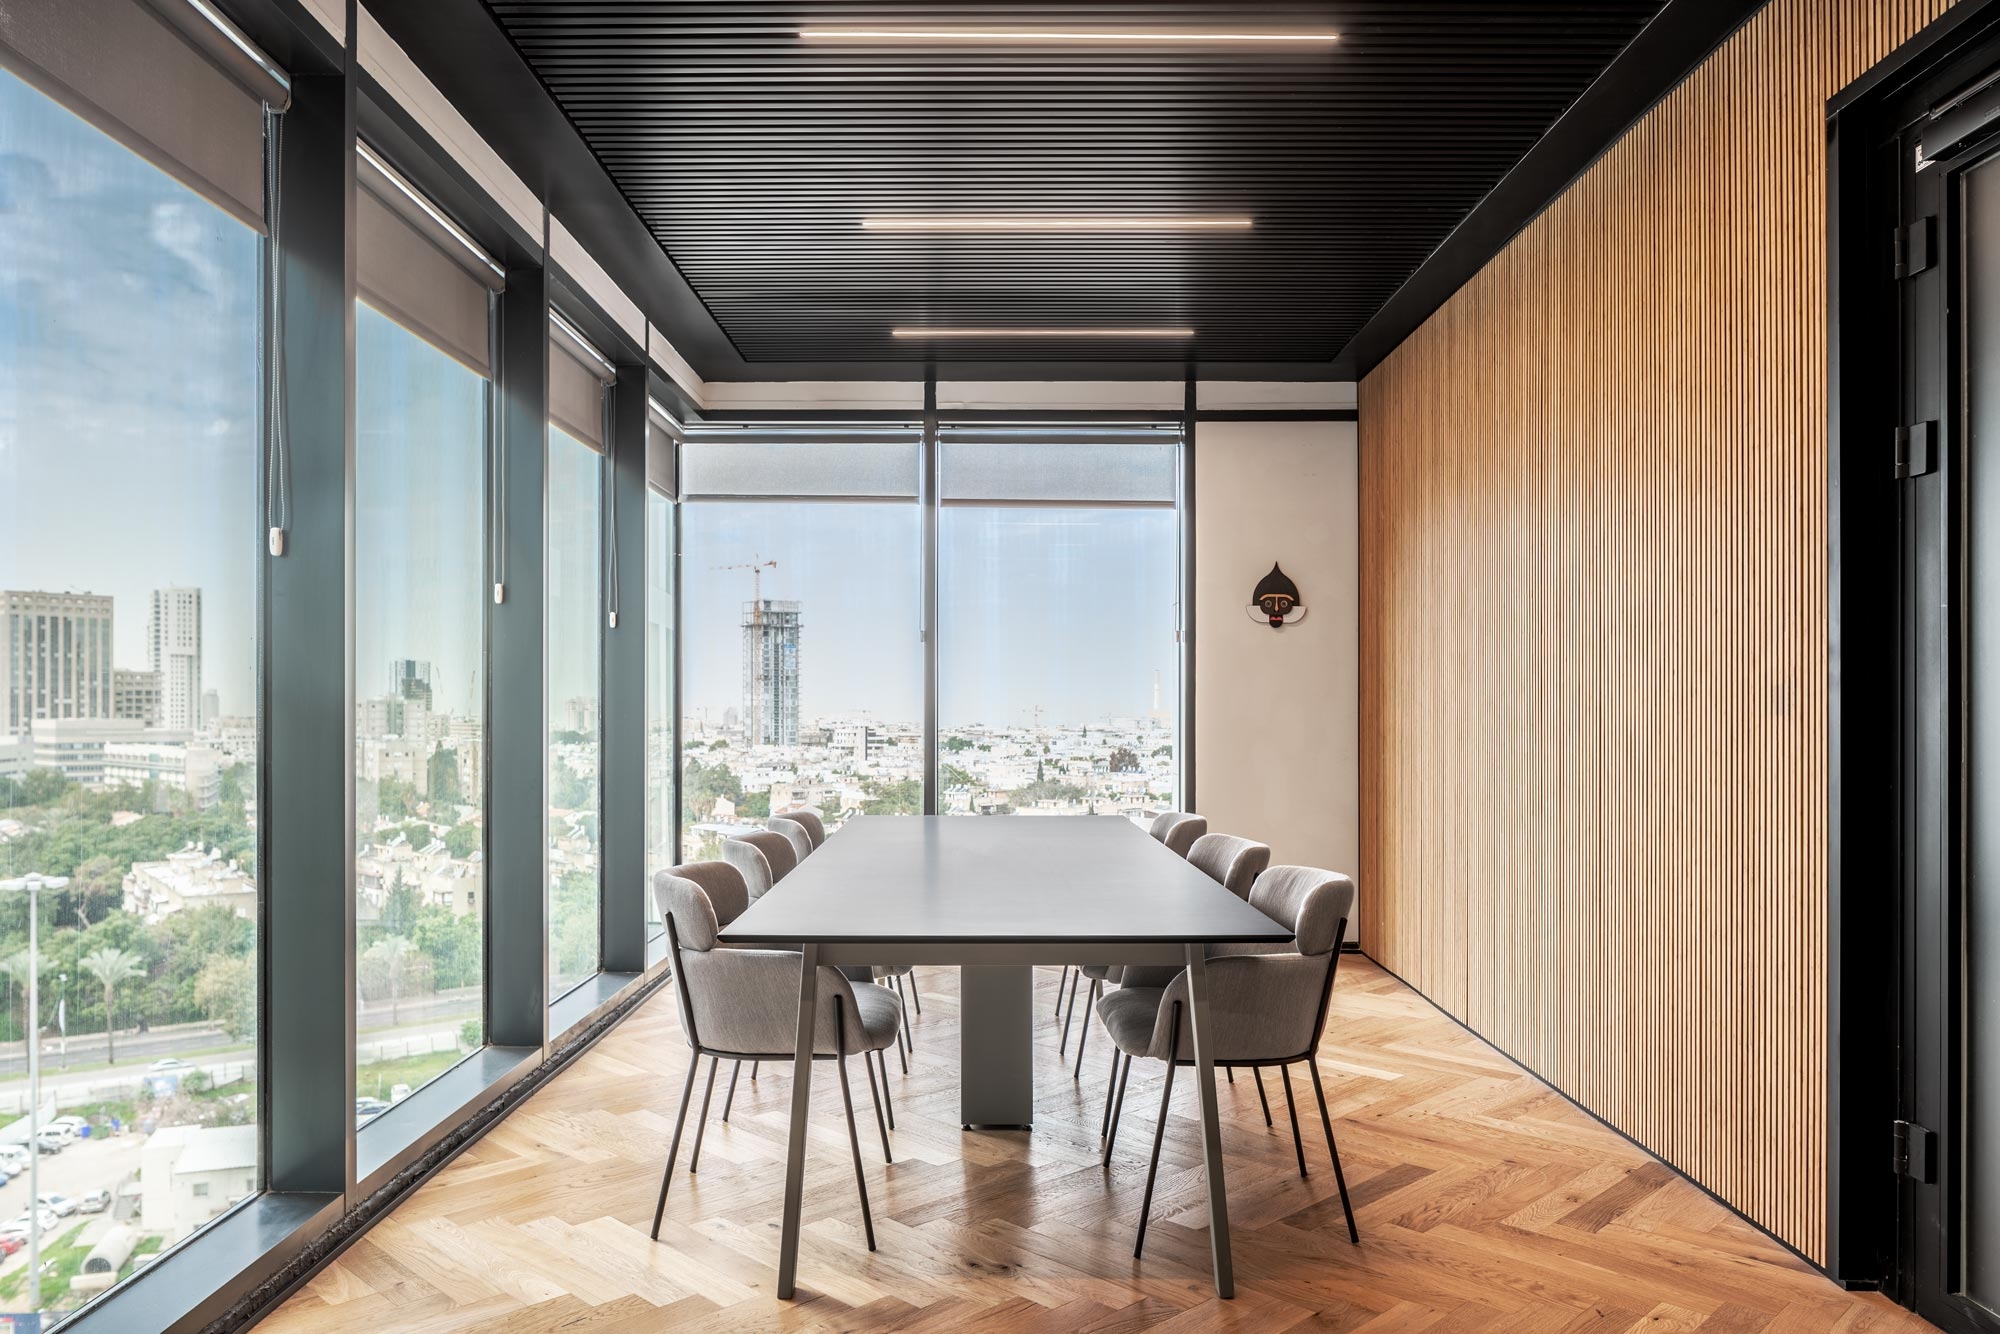 图片[11]|Jfrog 9楼办公室——特拉维夫|ART-Arrakis | 建筑室内设计的创新与灵感